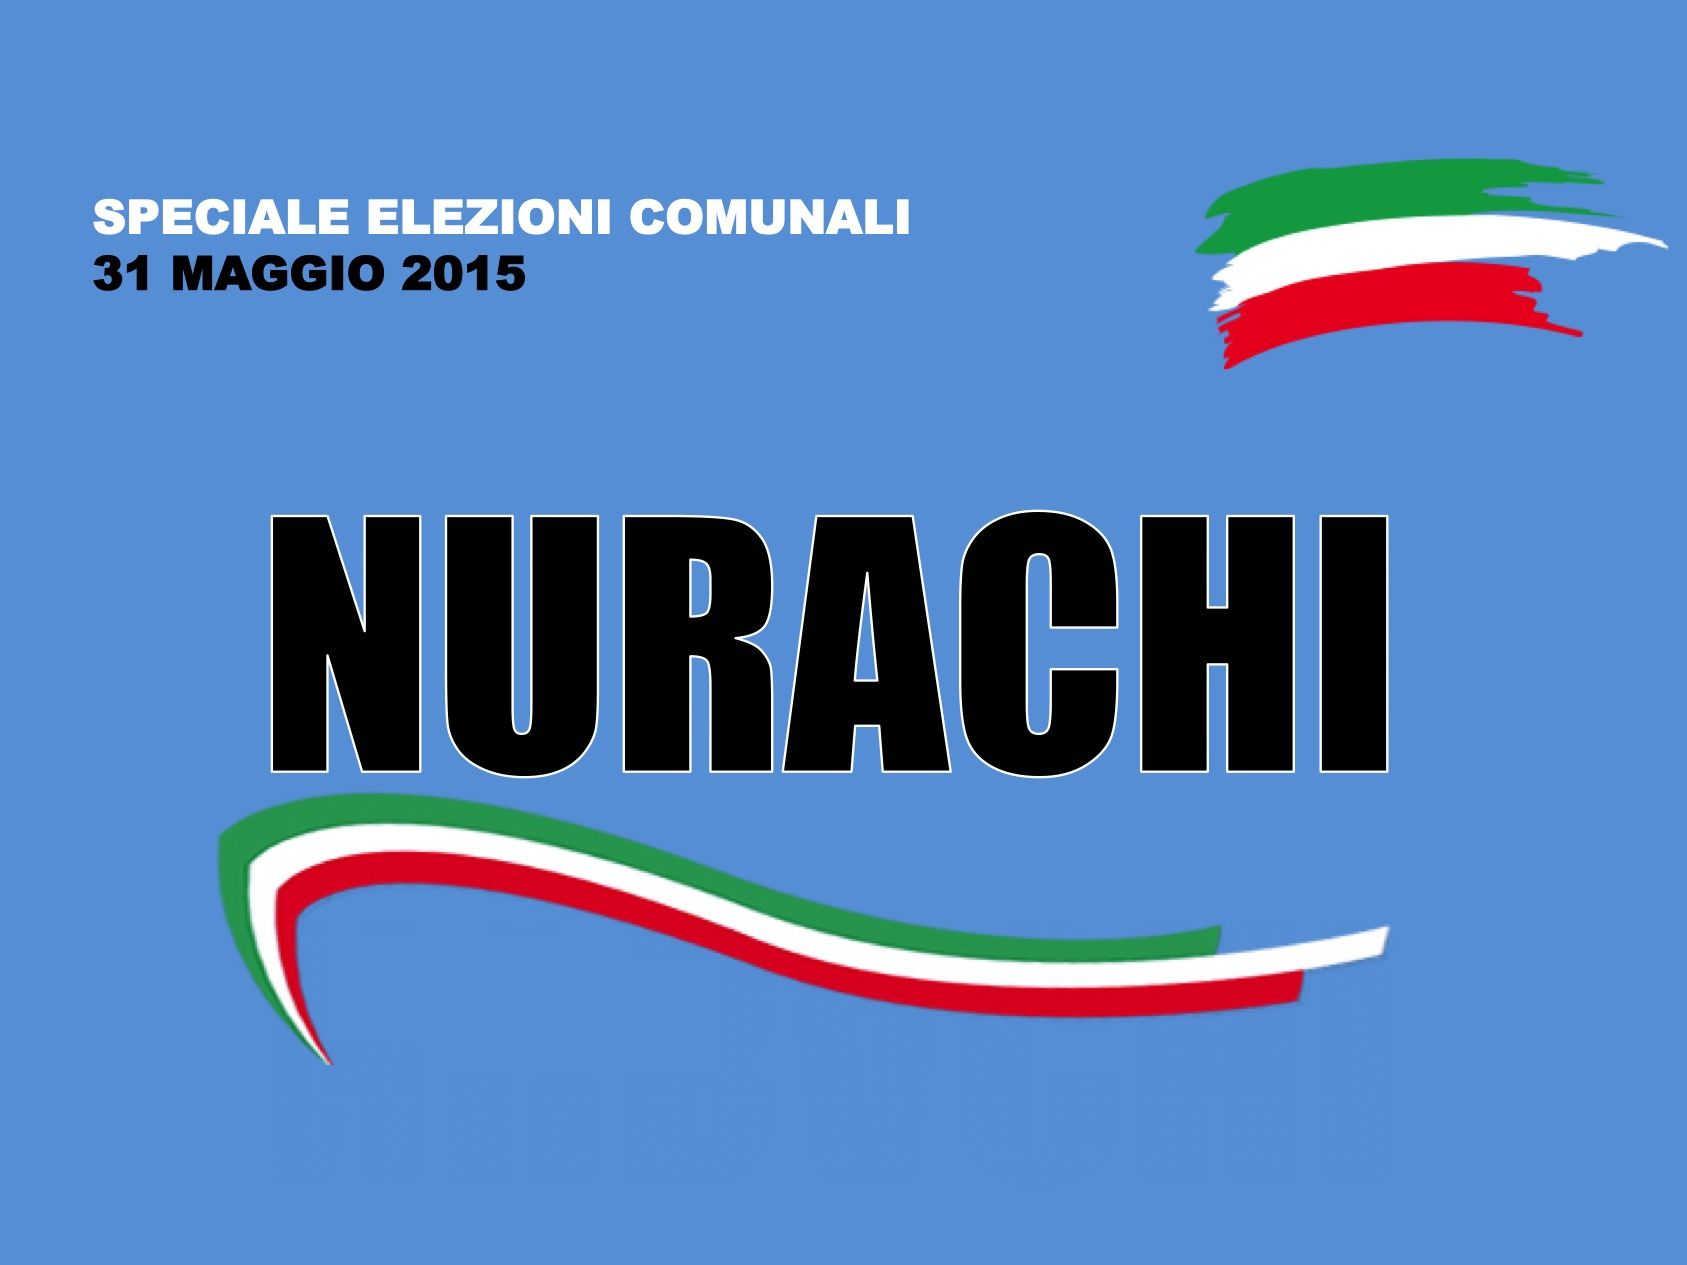 Nurachi. Elezioni Comunali 31 maggio 2015. I risultati delle votazioni